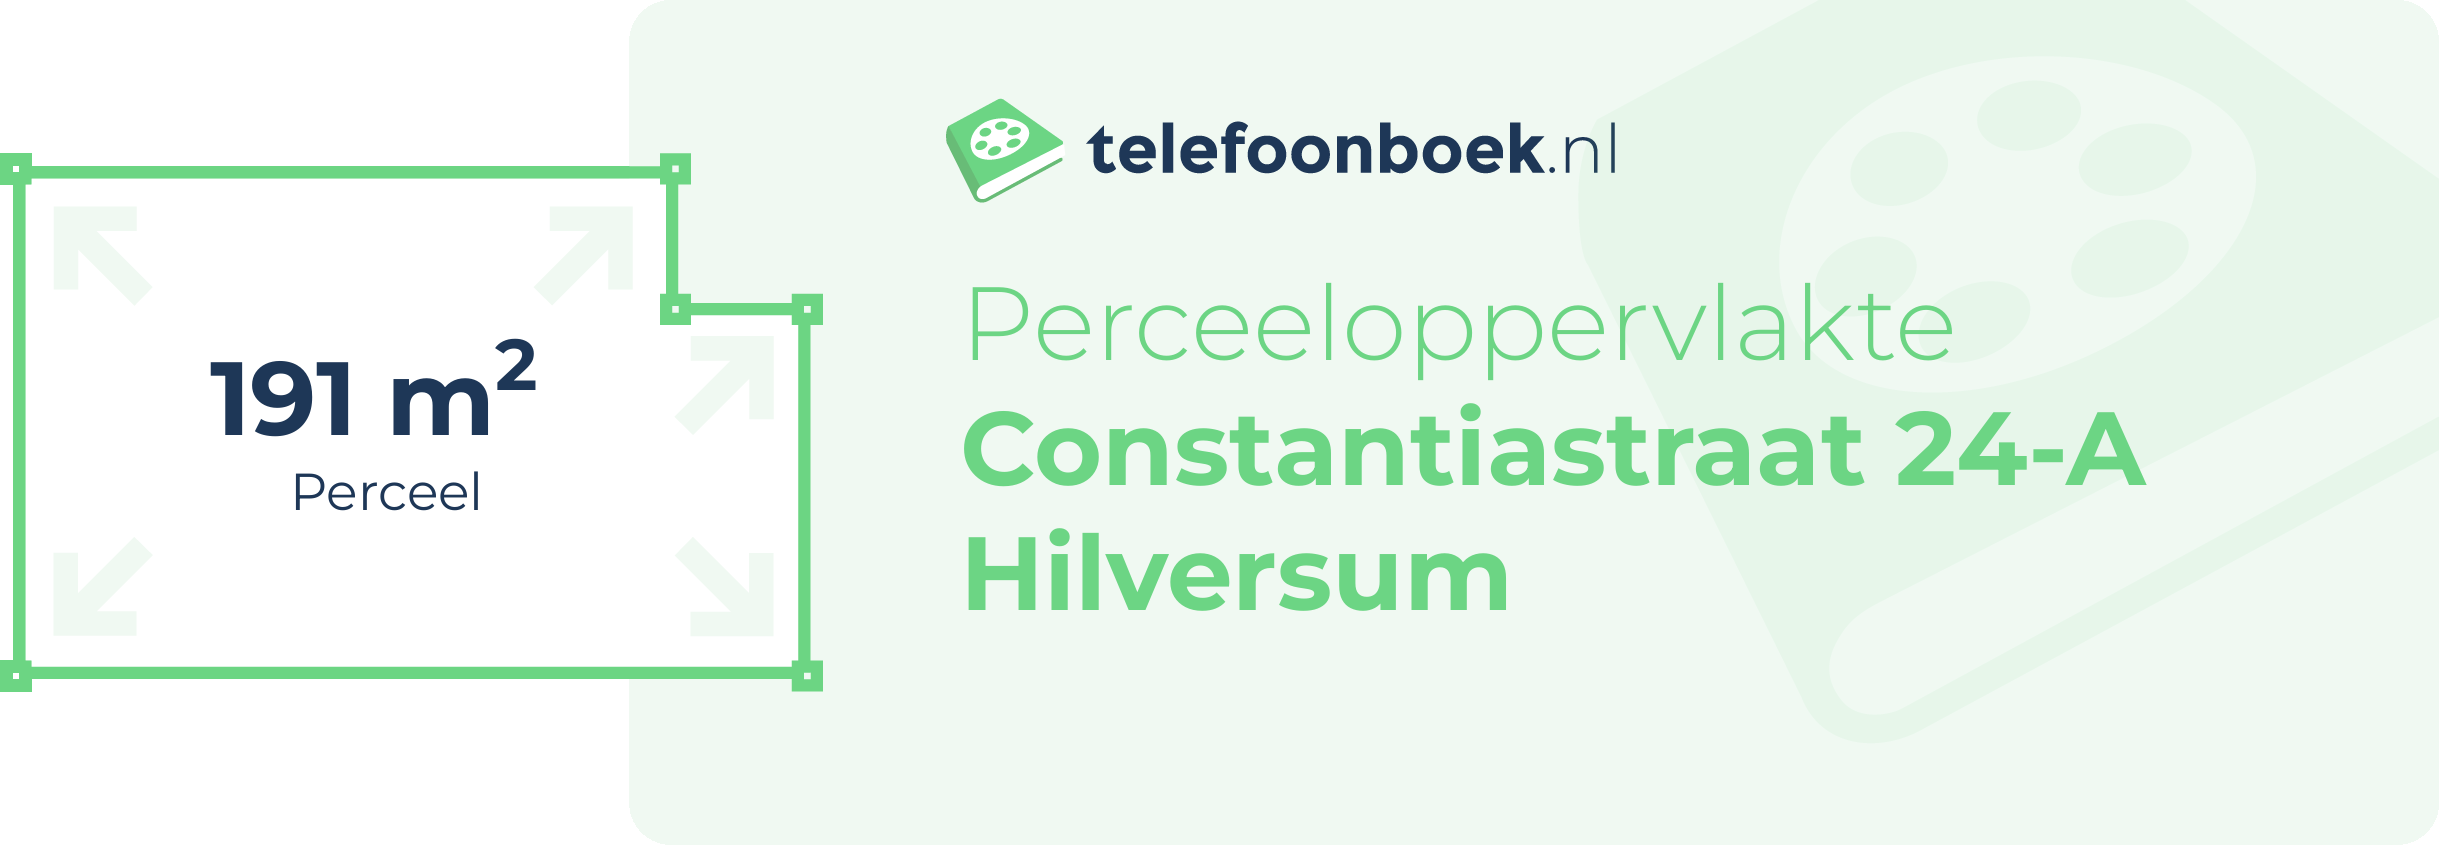 Perceeloppervlakte Constantiastraat 24-A Hilversum